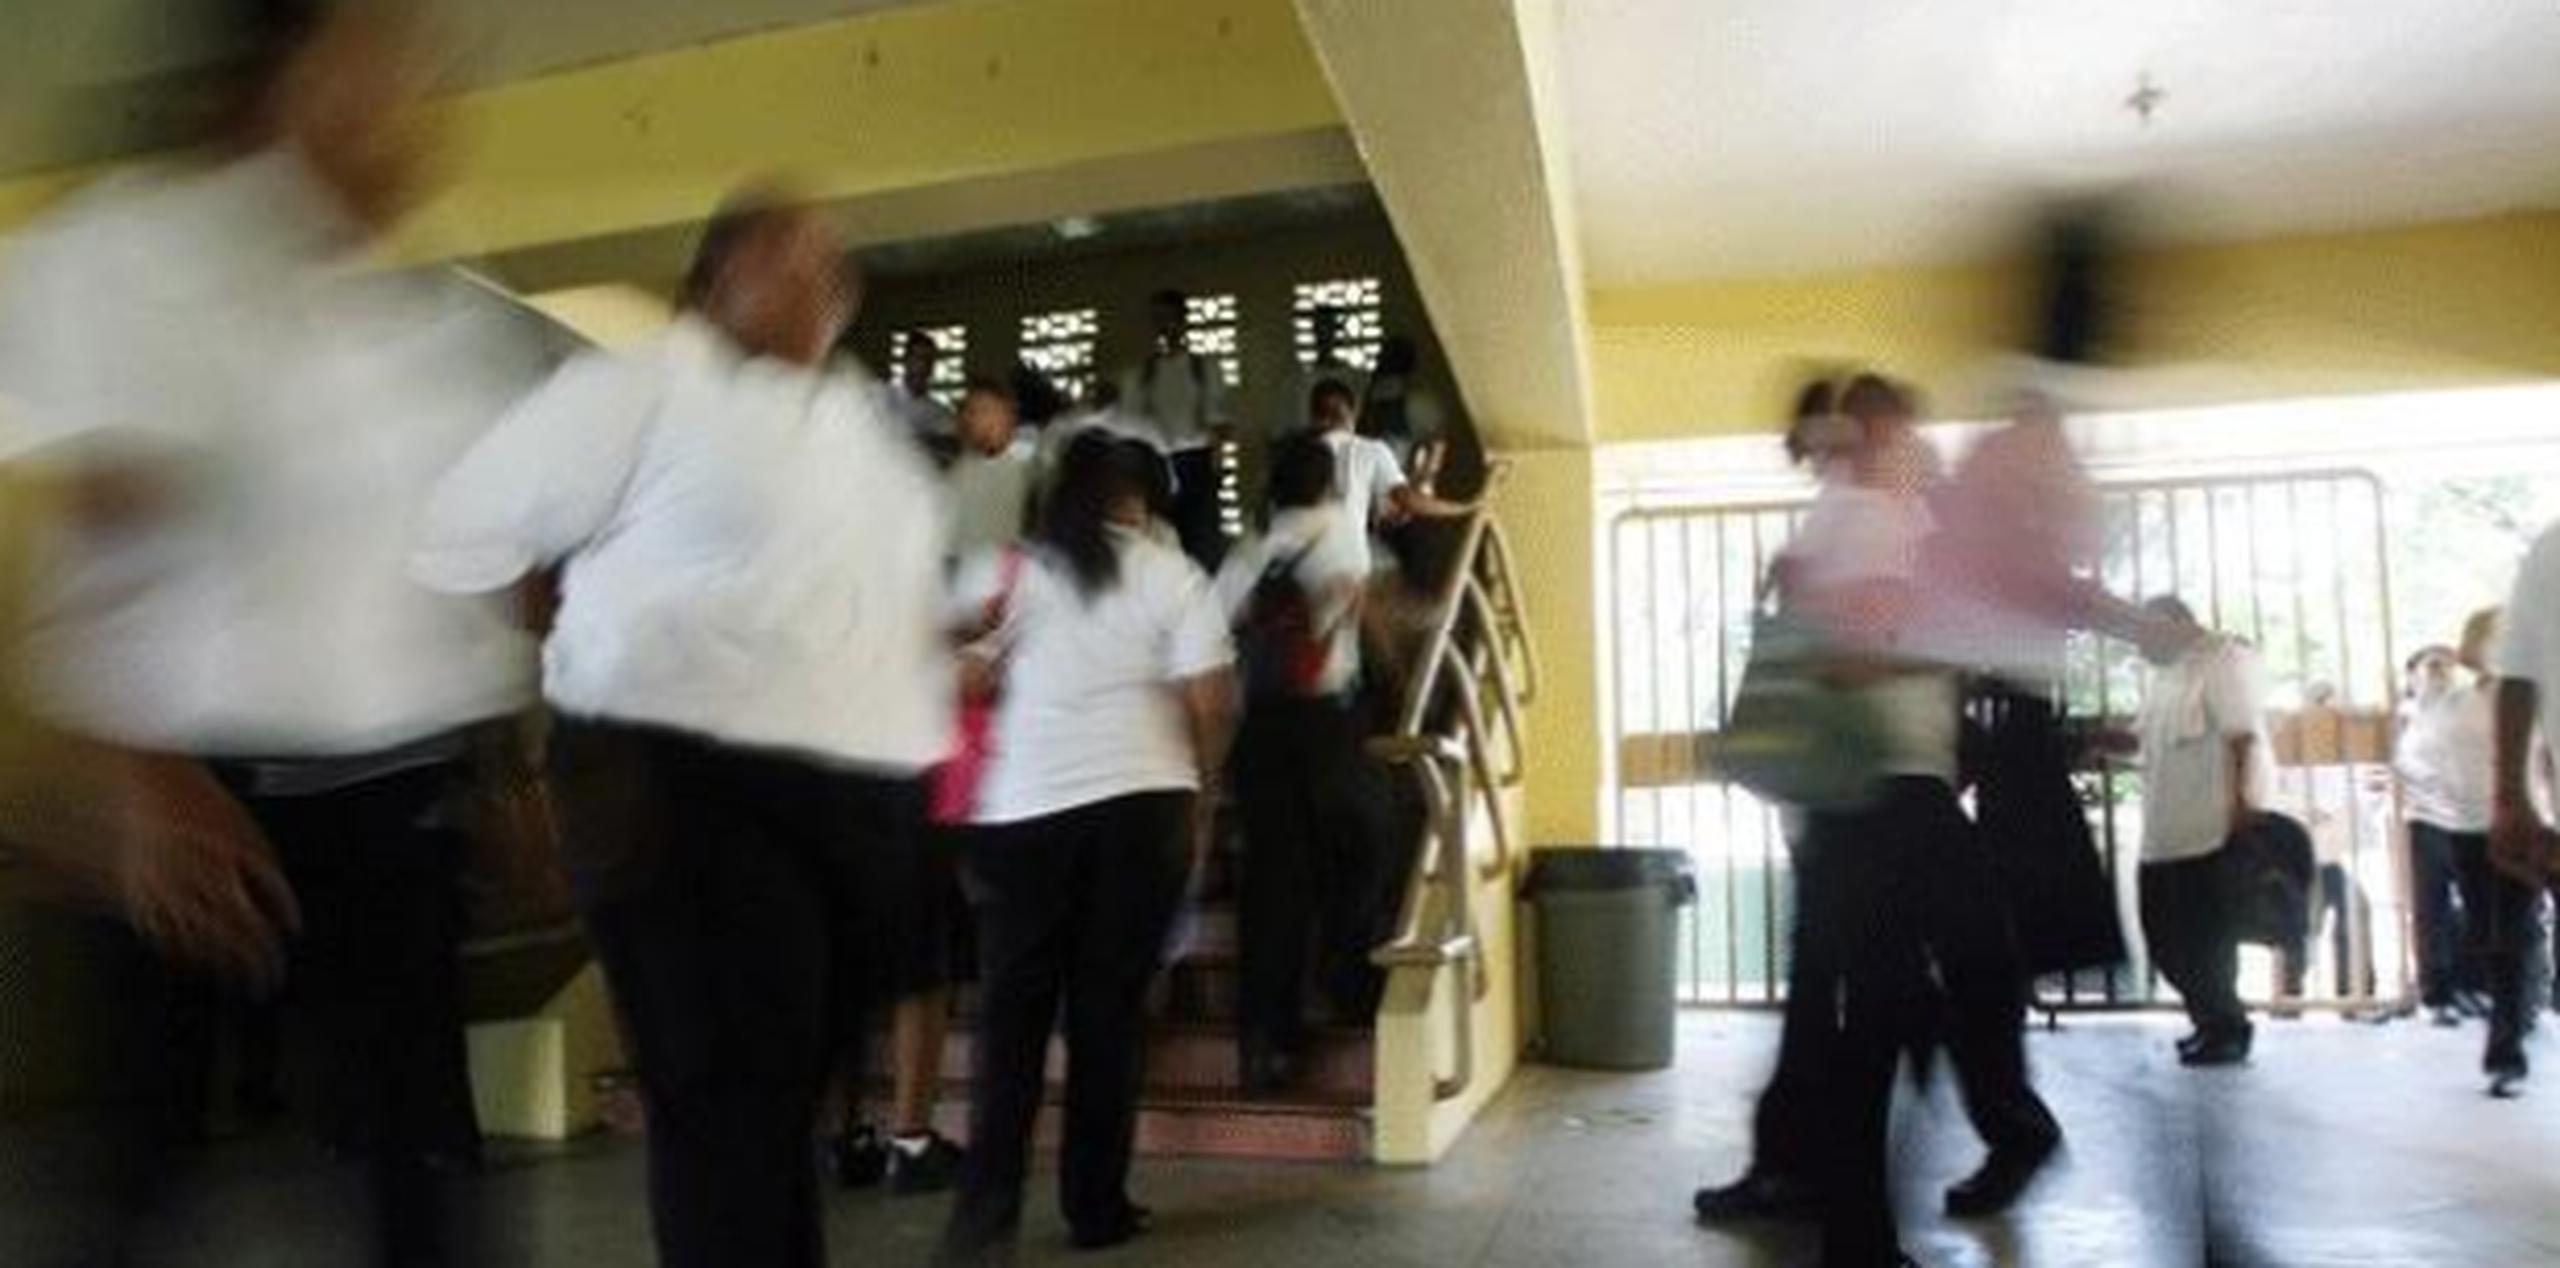 La Resolución de la Cámara 7 ordena al Departamento de Educación y a la Policía de Puerto Rico crear un plan piloto de vigilancia policiaca para una transición ordenada de la vigilancia de las escuelas a la Uniformada. (Archivo)